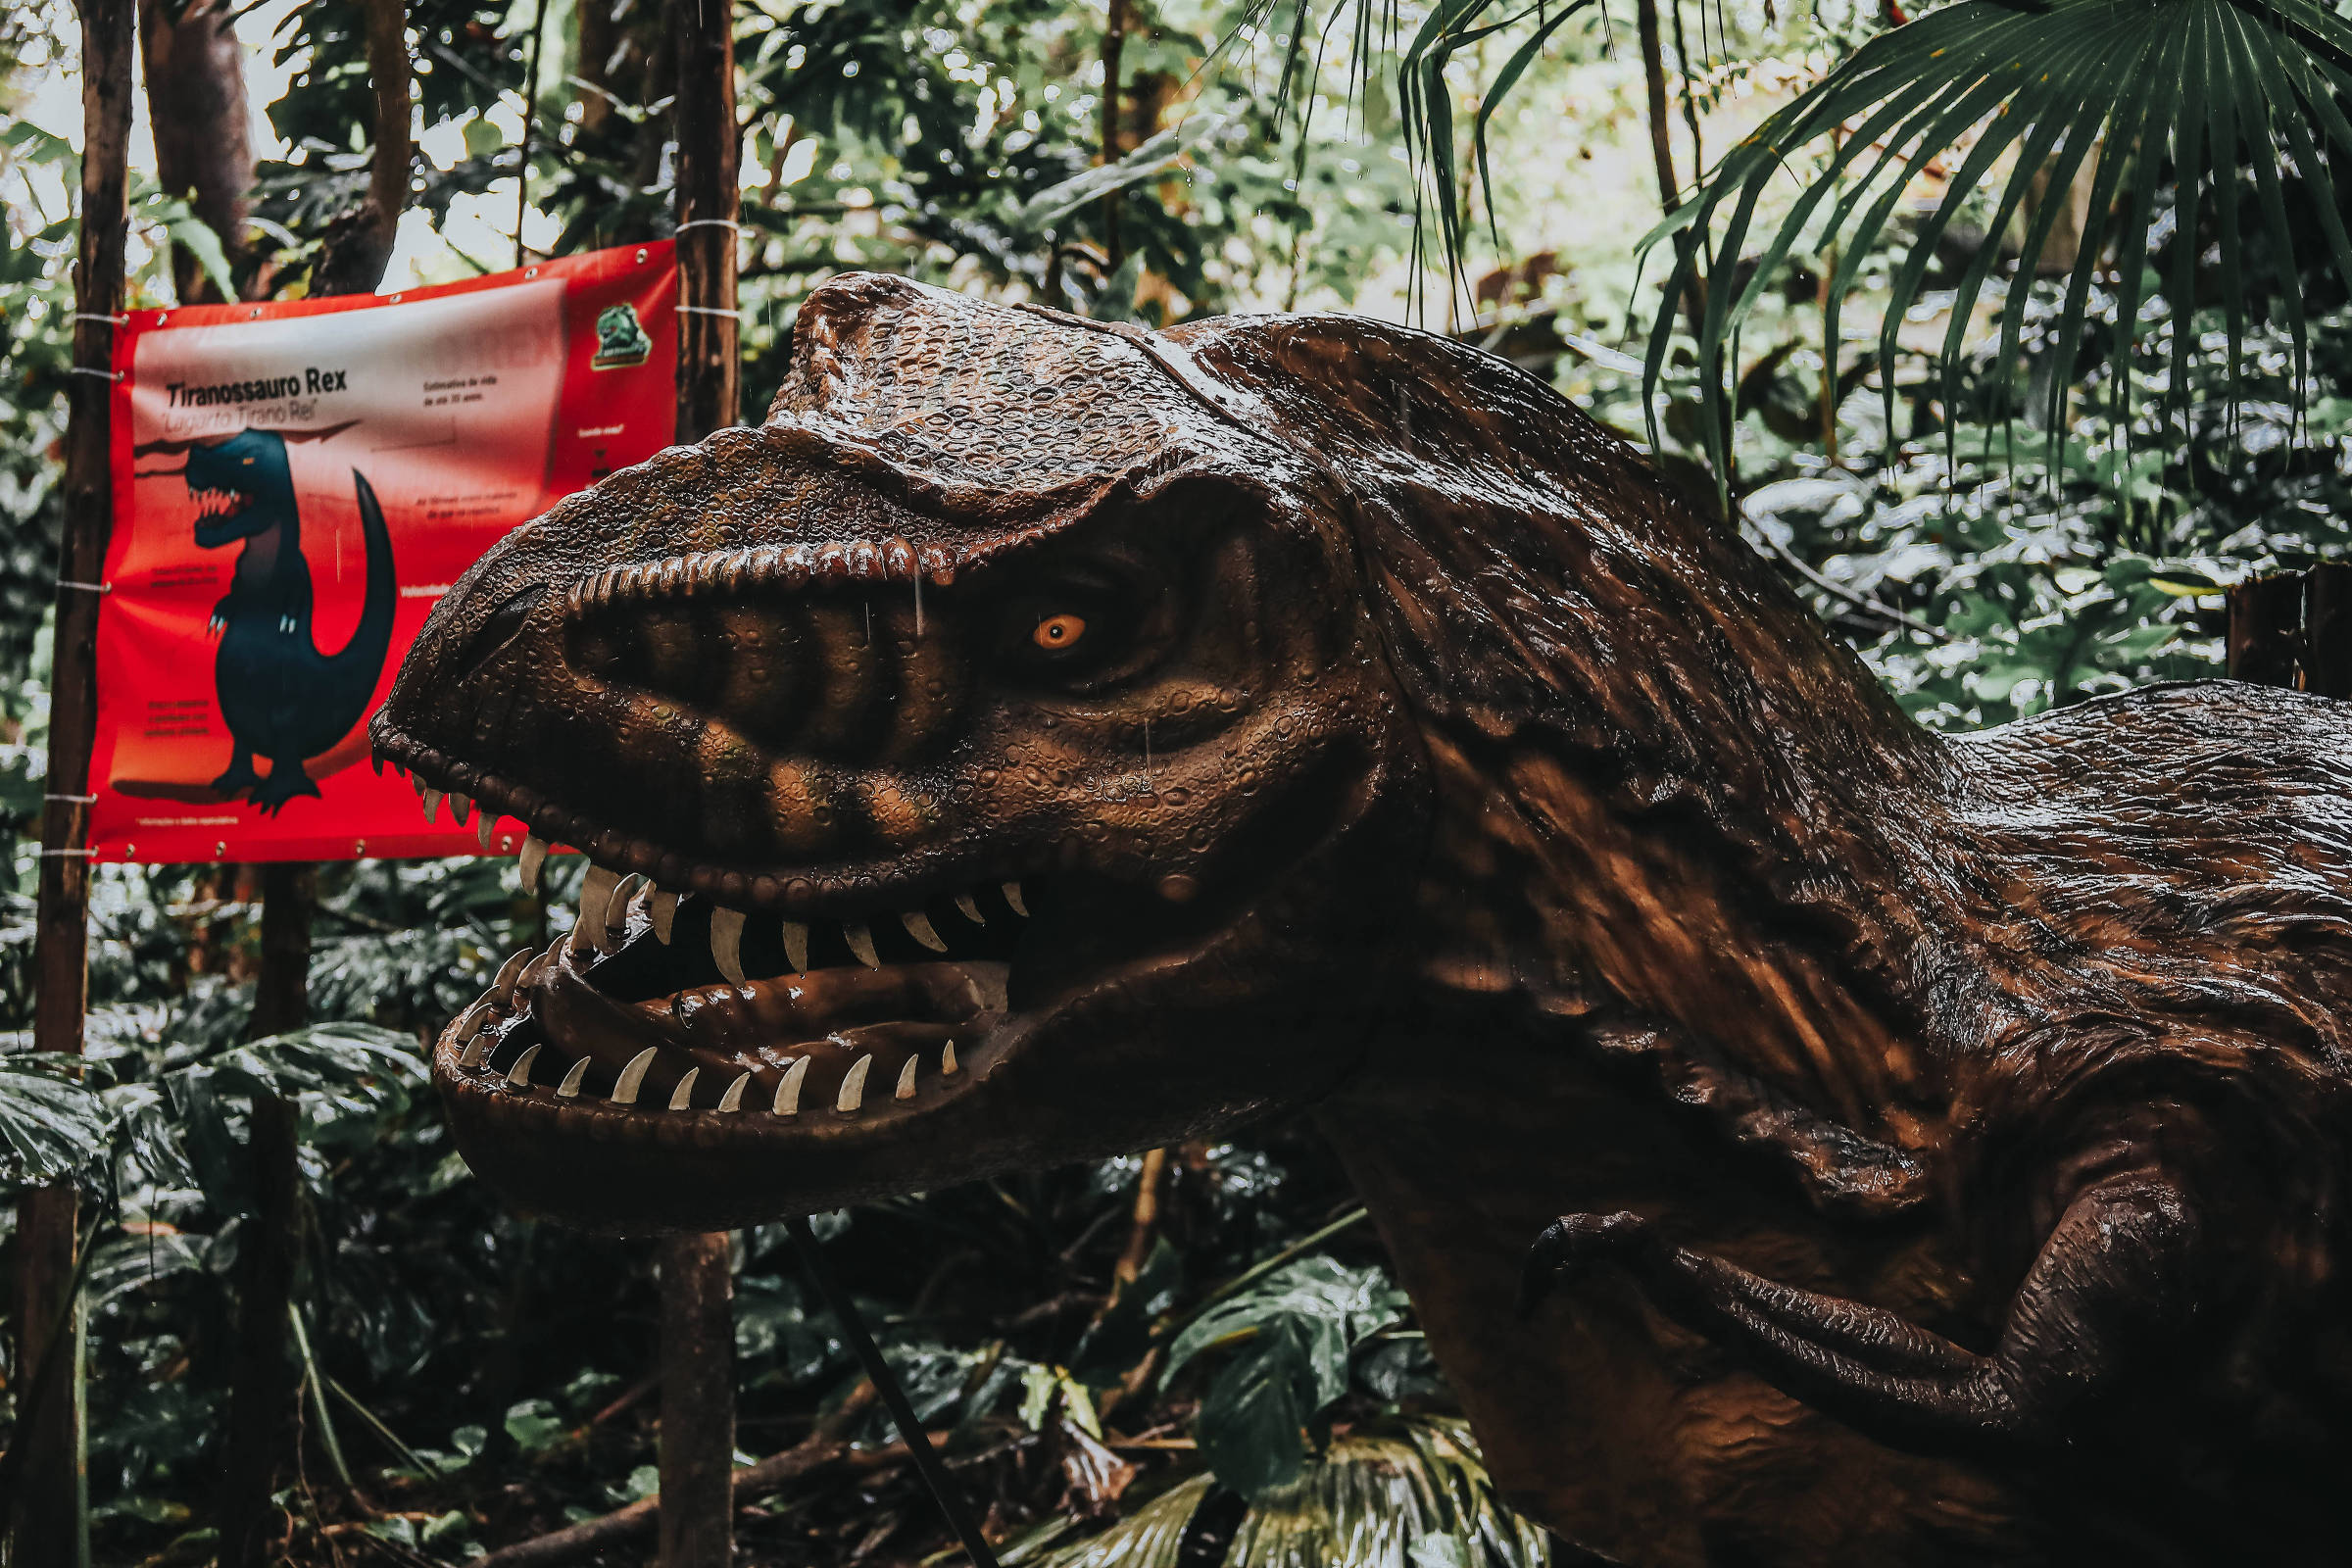 Era dos Dinossauros: jogo educativo